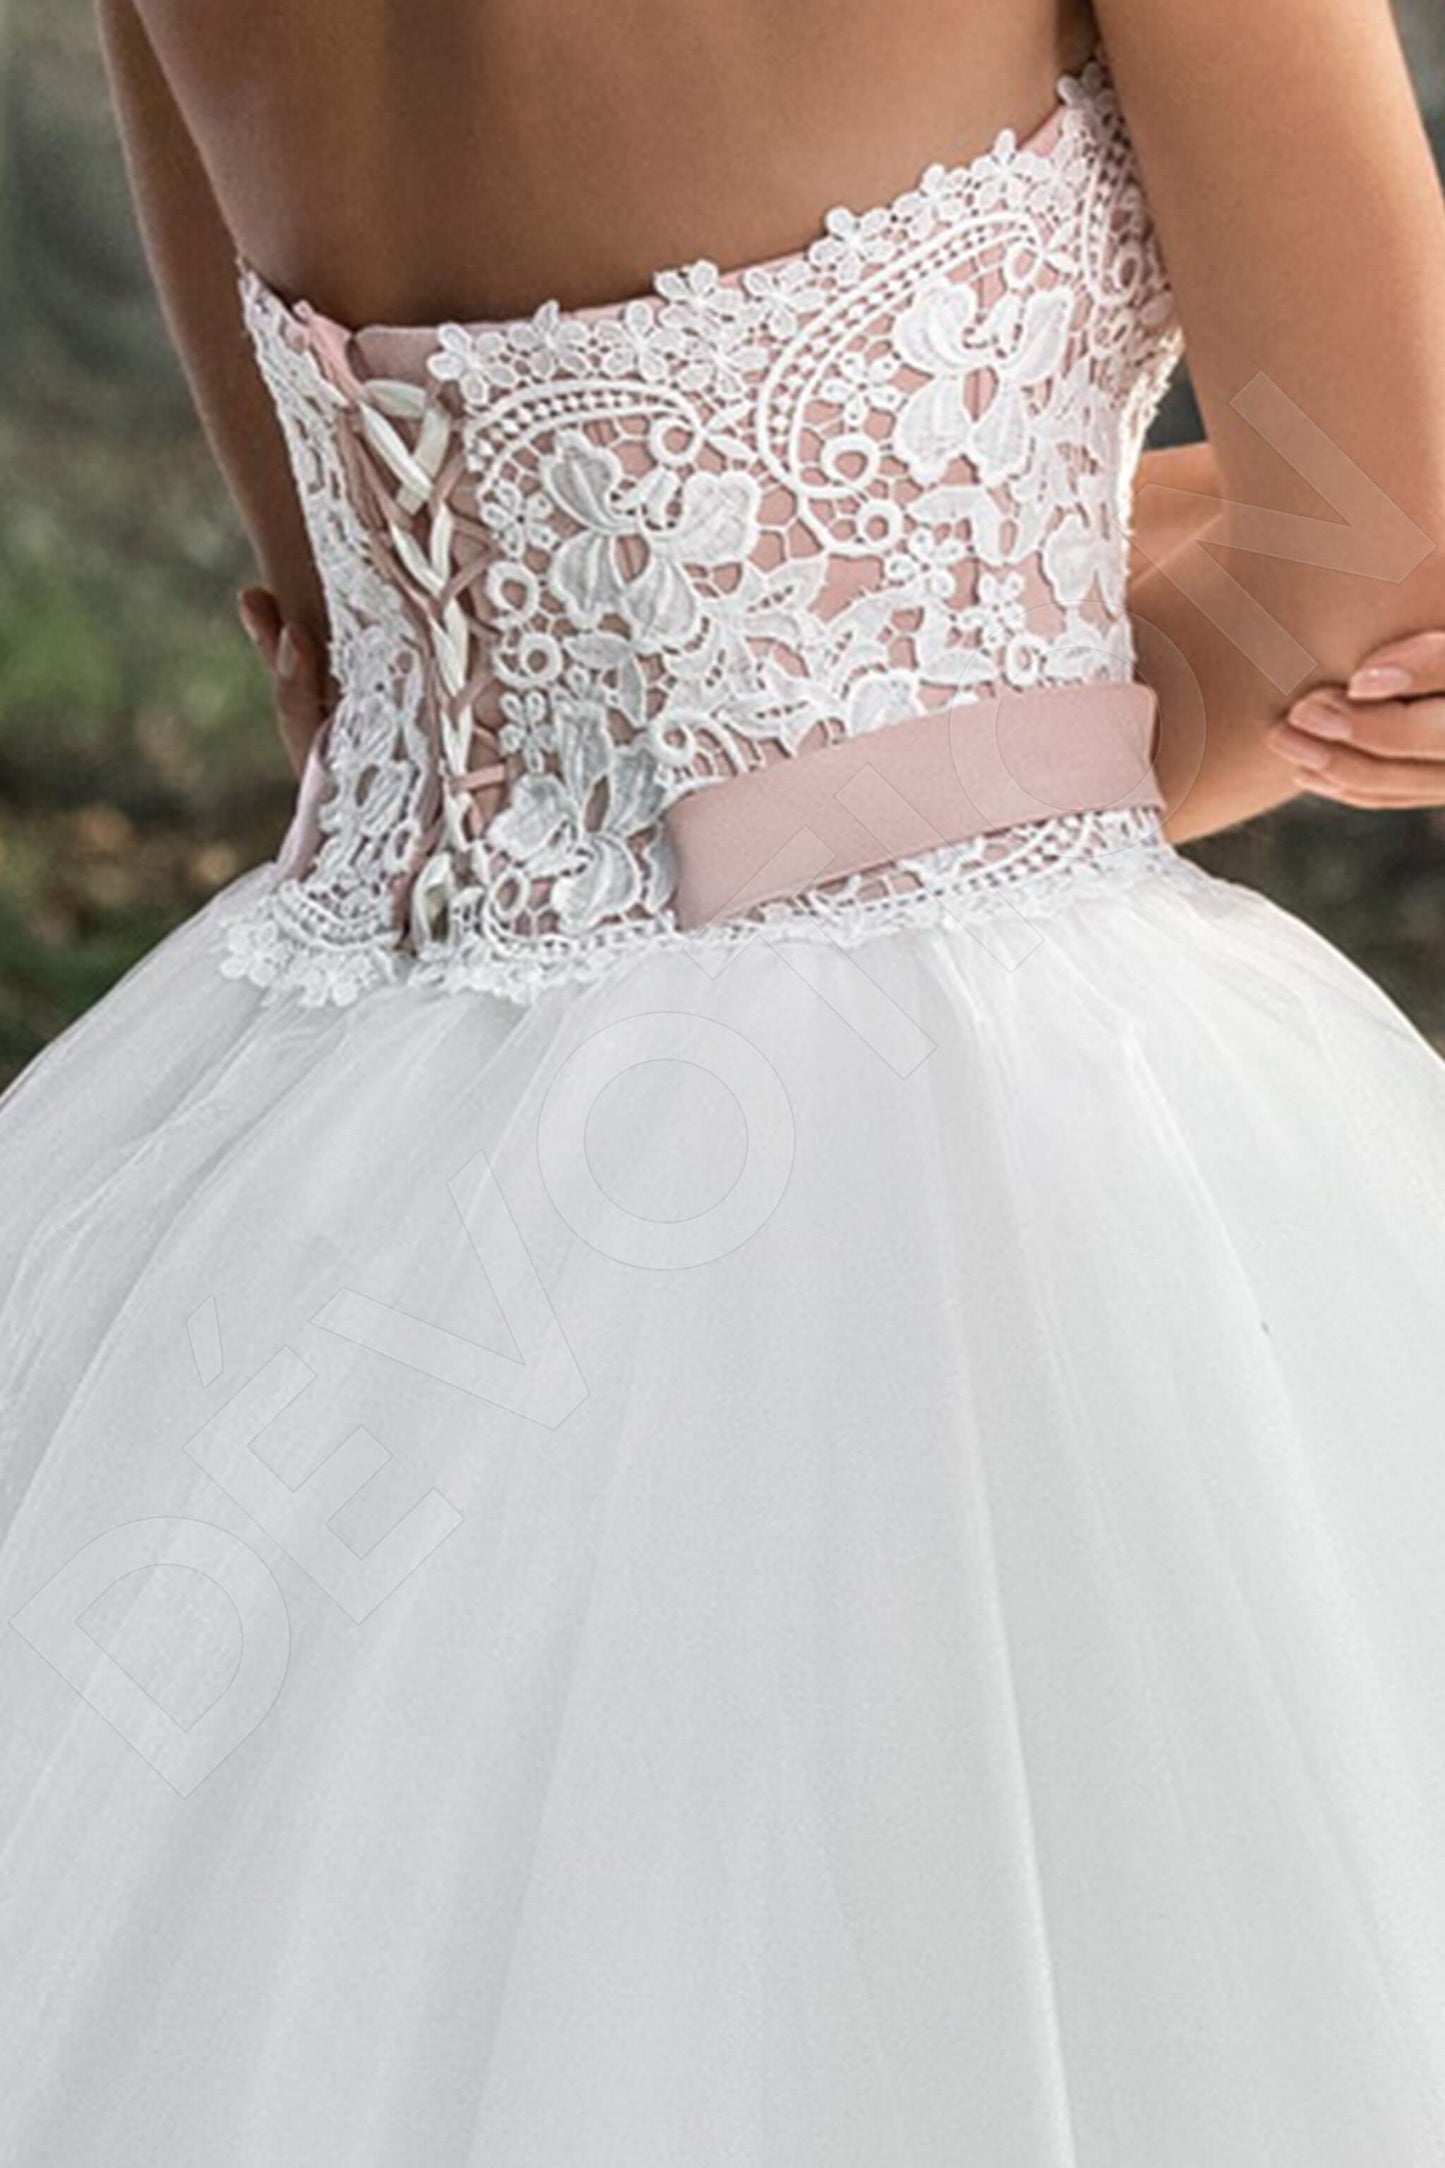 Langley Open back Princess/Ball Gown Strapless Wedding Dress 6